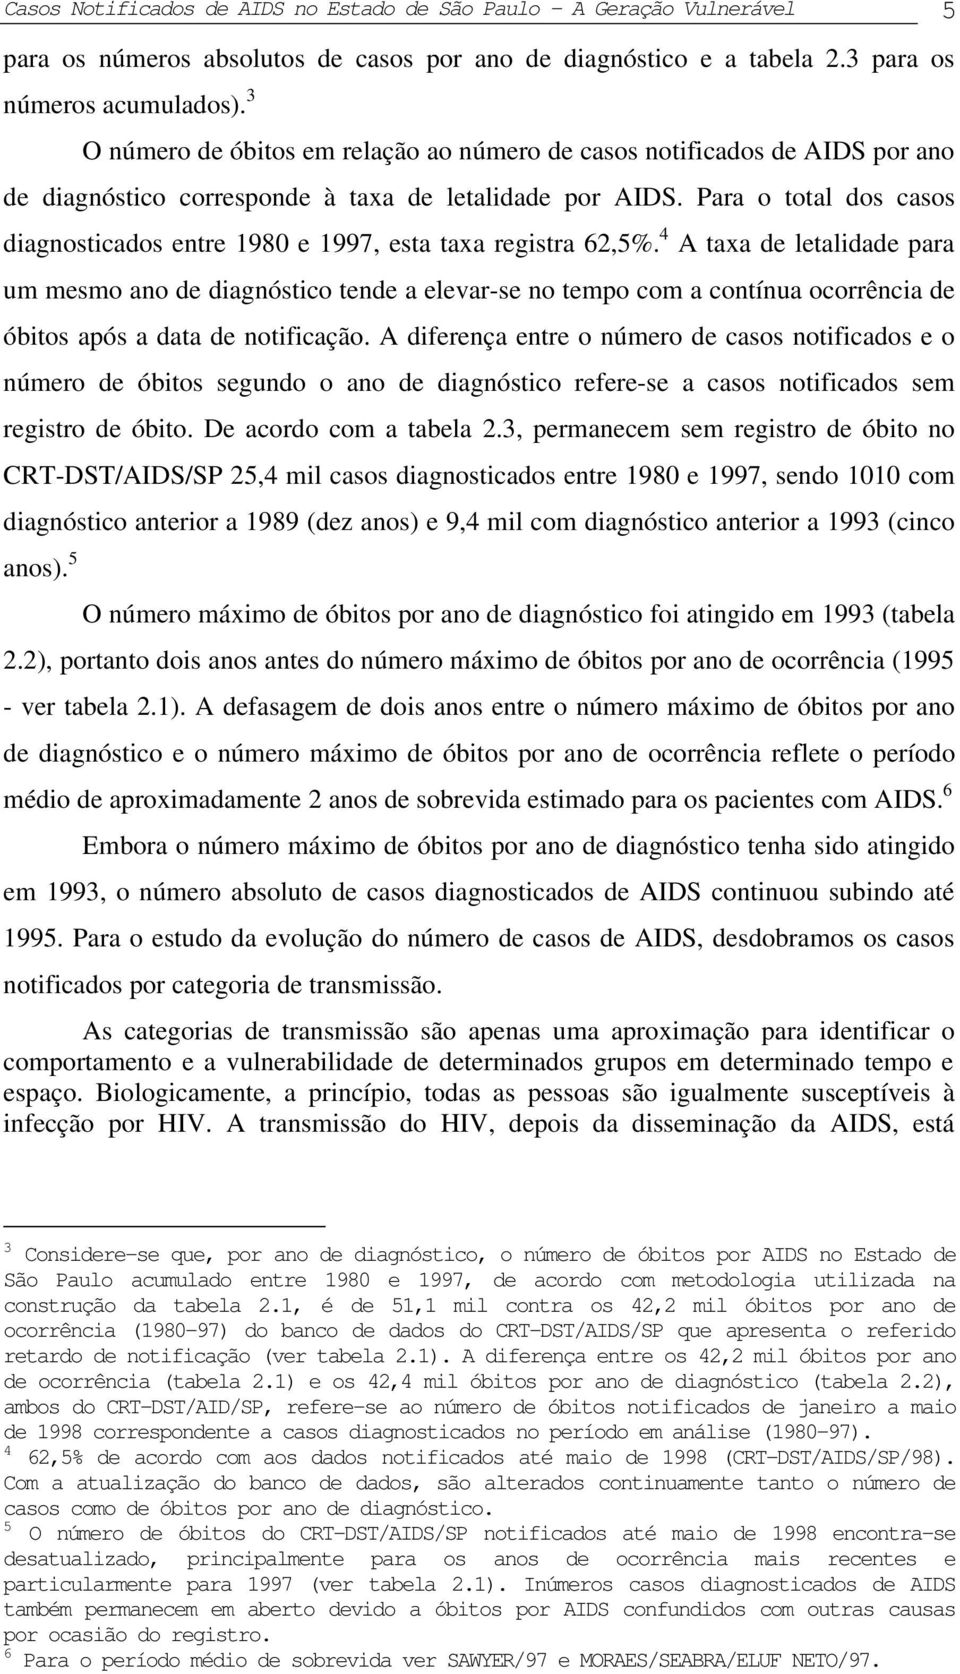 diagnóstico e a tabela 2.3 para os números acumulados). 3 O número de óbitos em relação ao número de casos notificados de AIDS por ano de diagnóstico corresponde à taxa de letalidade por AIDS.